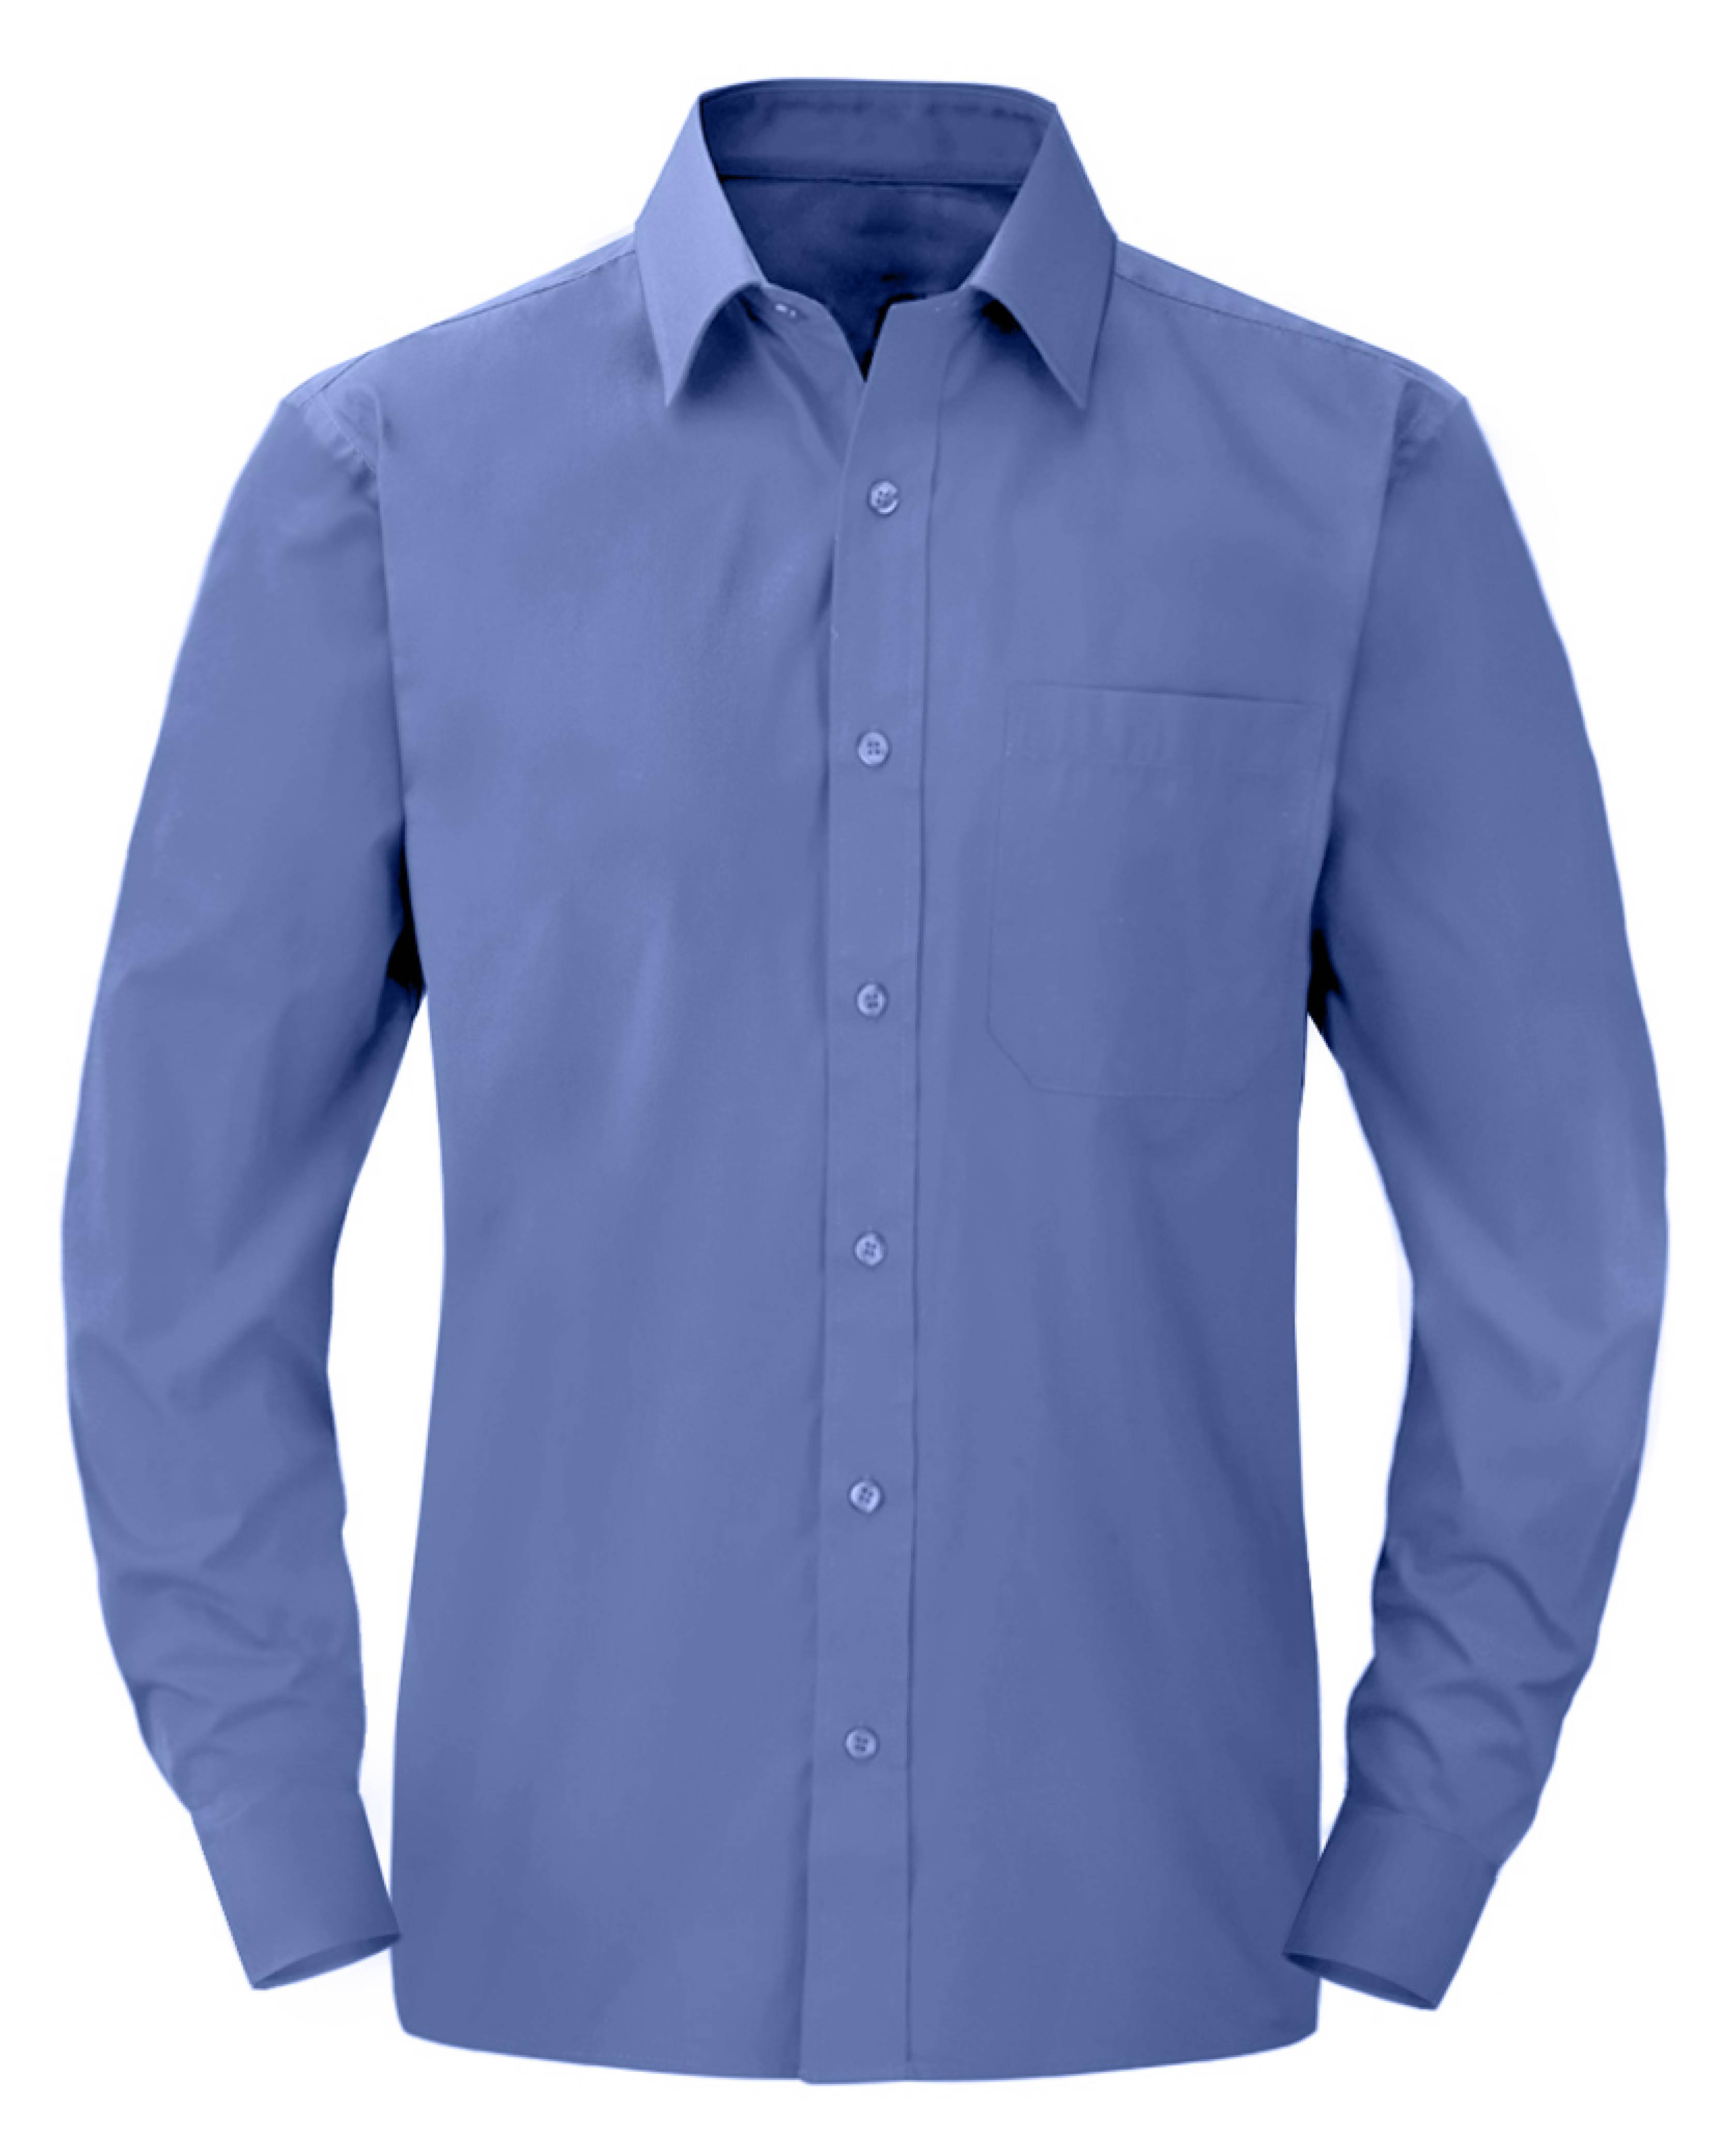 Modello di camicia azzurra manica lunga, che può essere realizzata con tessuto antivirale 